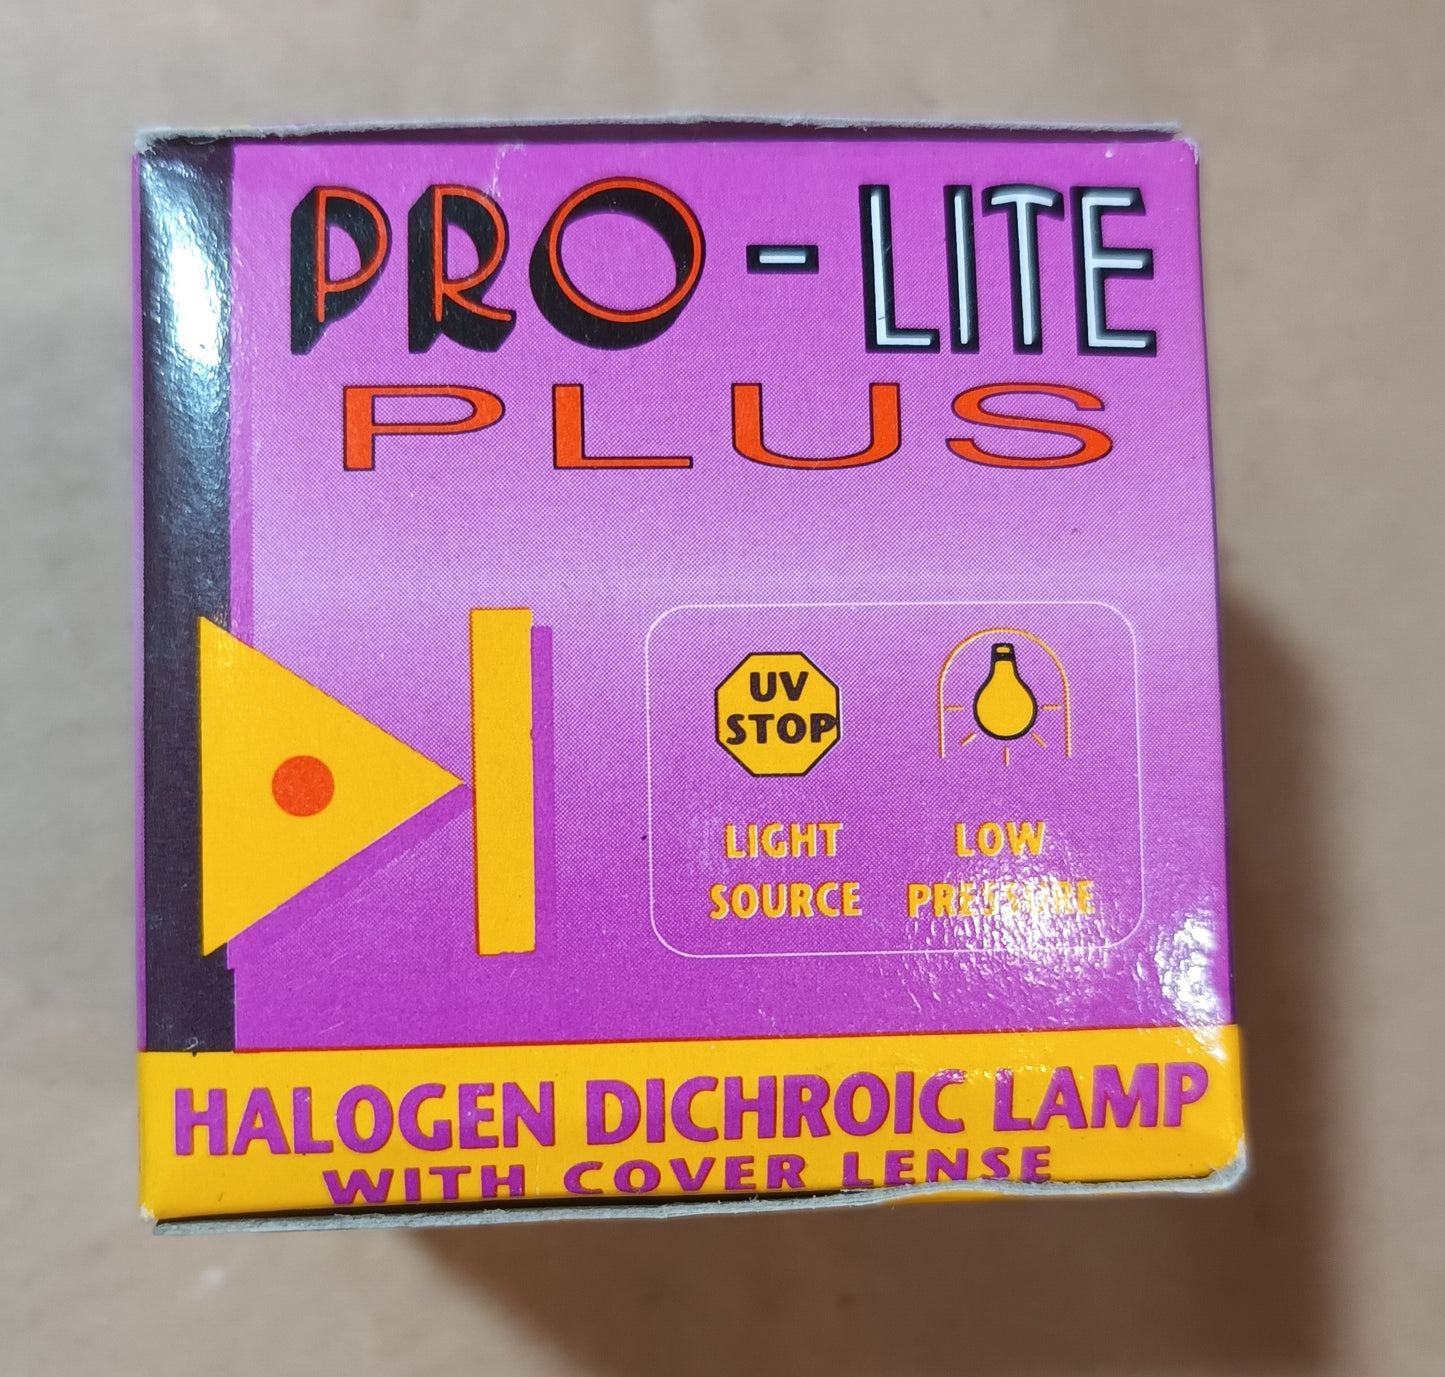 MR11 35 watt 12 volt Halogen Dichroic Lamp 30°Degree Beam by Pro-lite